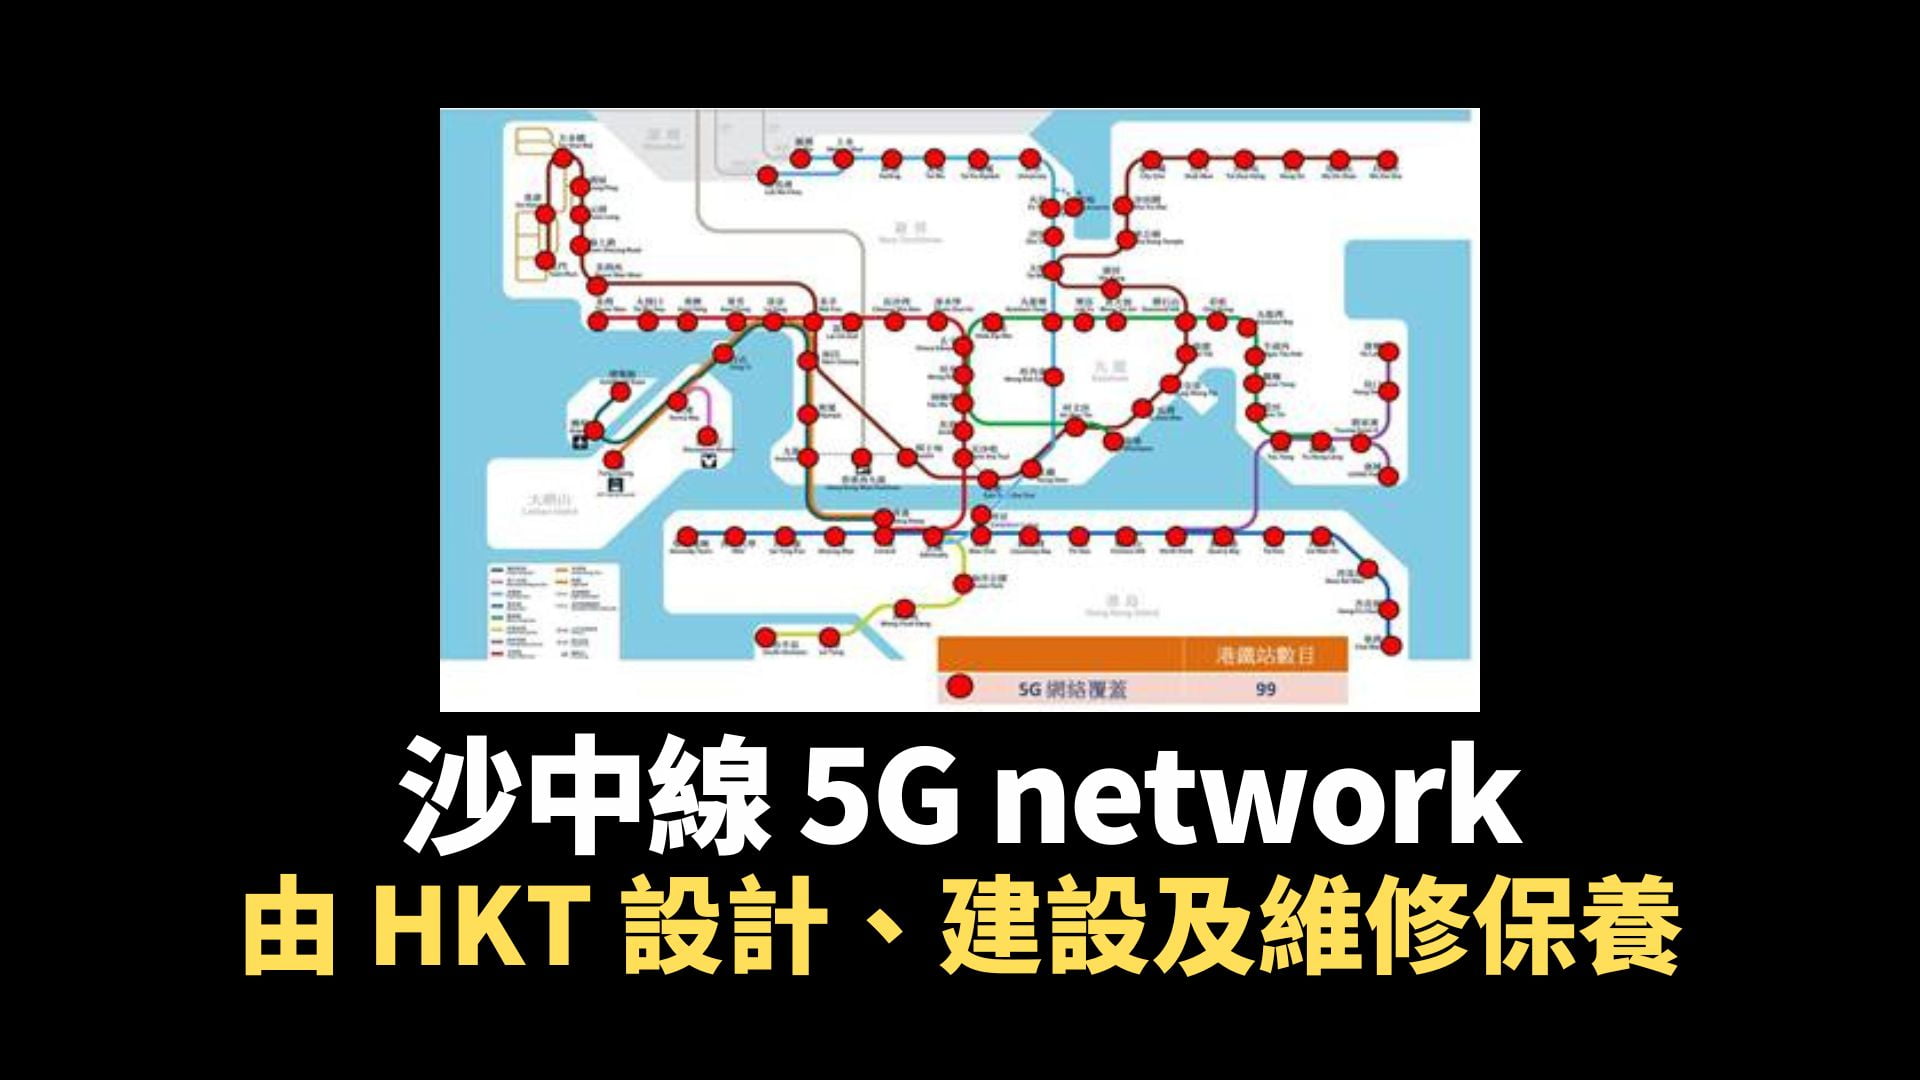 HKT：5G 網絡覆蓋「東鐵綫過海段」